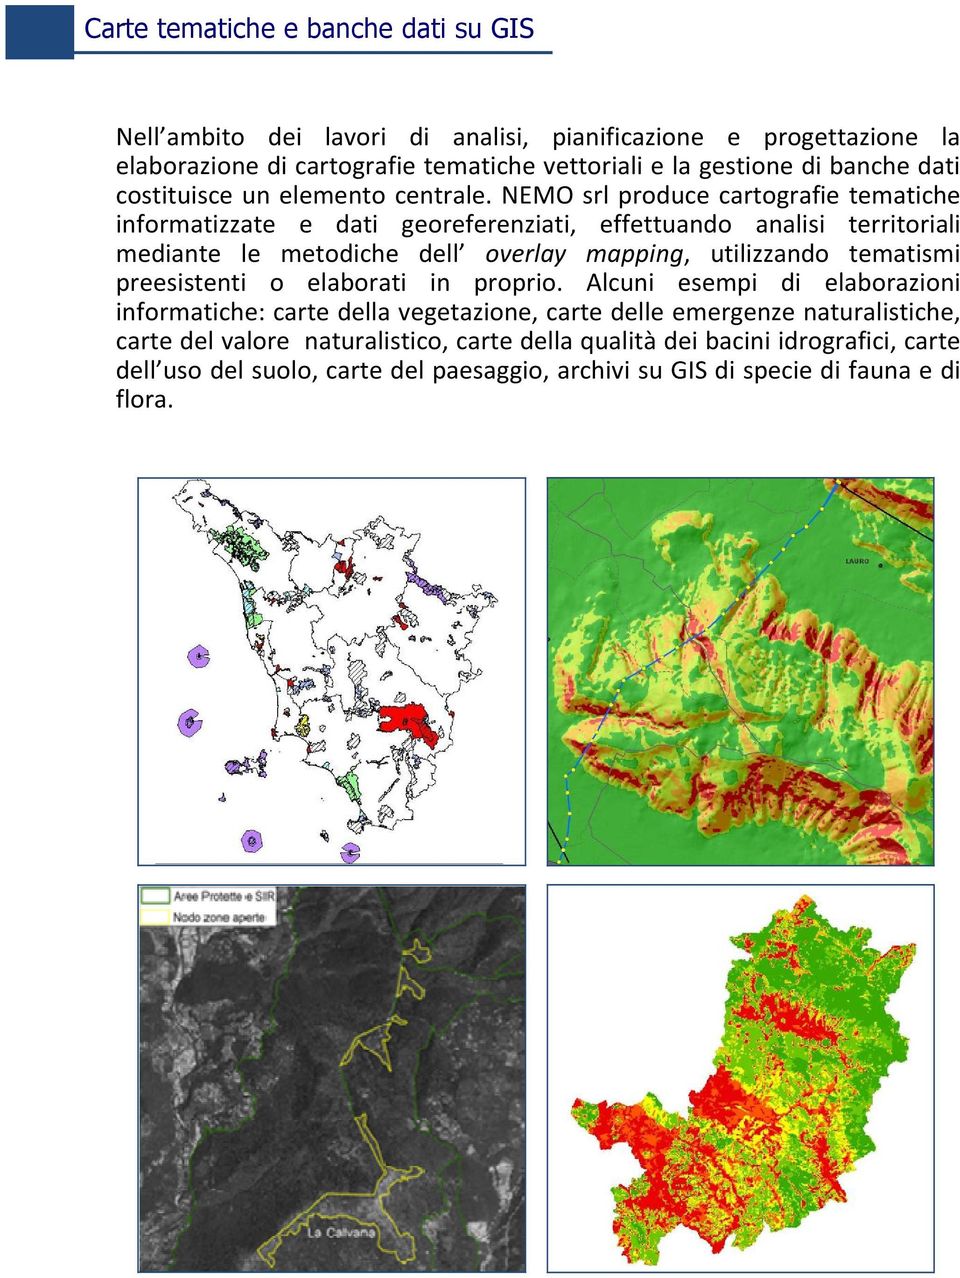 NEMO srl produce cartografie tematiche informatizzate e dati georeferenziati, effettuando analisi territoriali mediante le metodiche dell overlay mapping, utilizzando tematismi